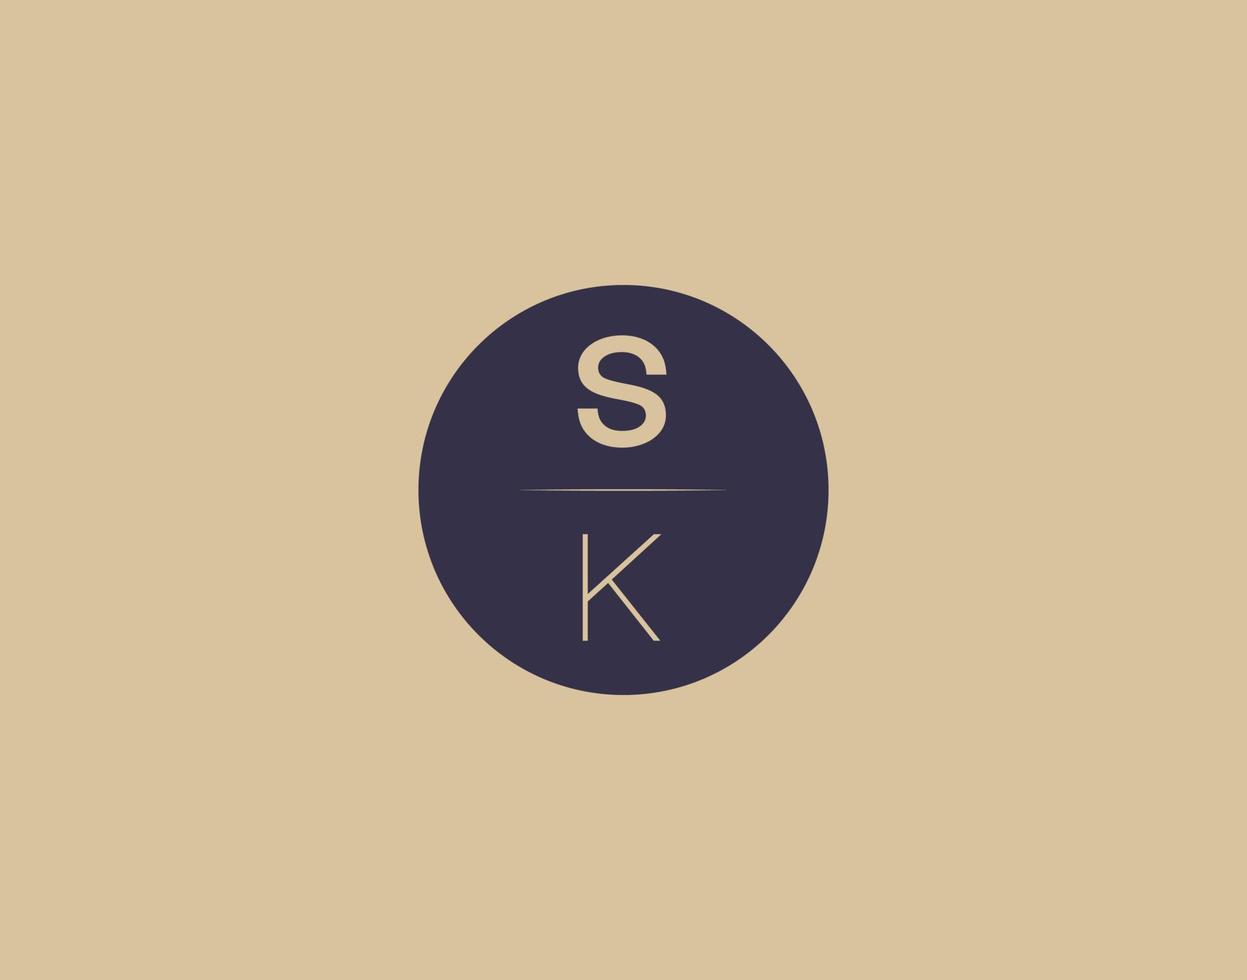 imagens vetoriais de design de logotipo moderno e elegante da carta sk vetor